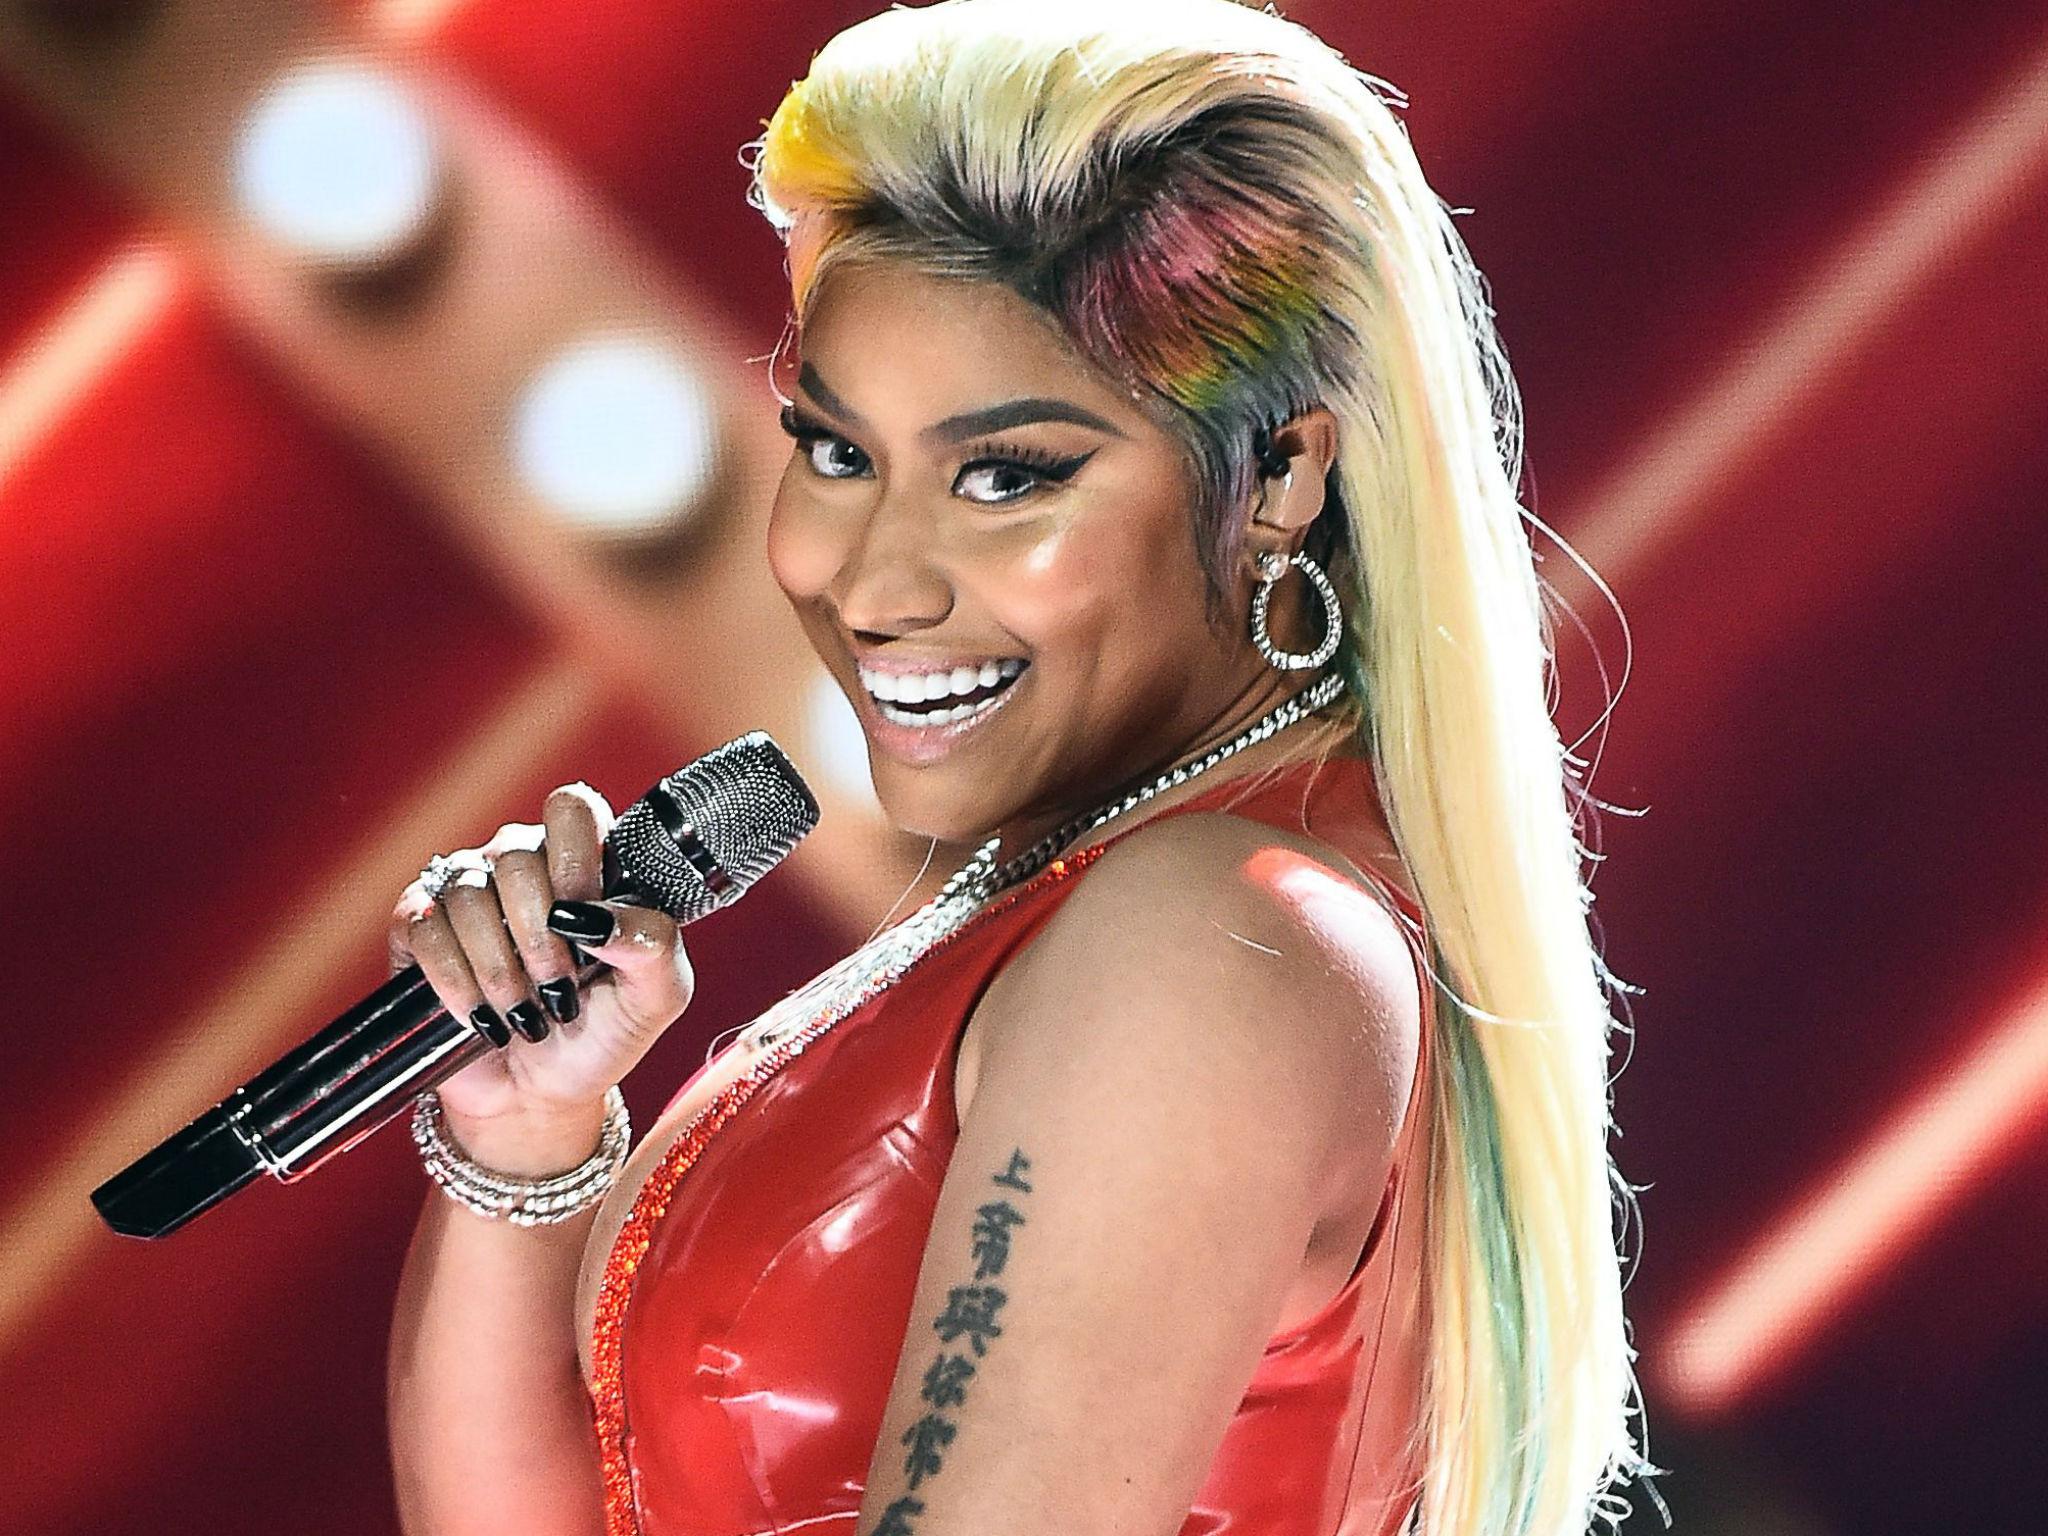 El bochorno de Nicki Minaj al cancelar concierto en directo